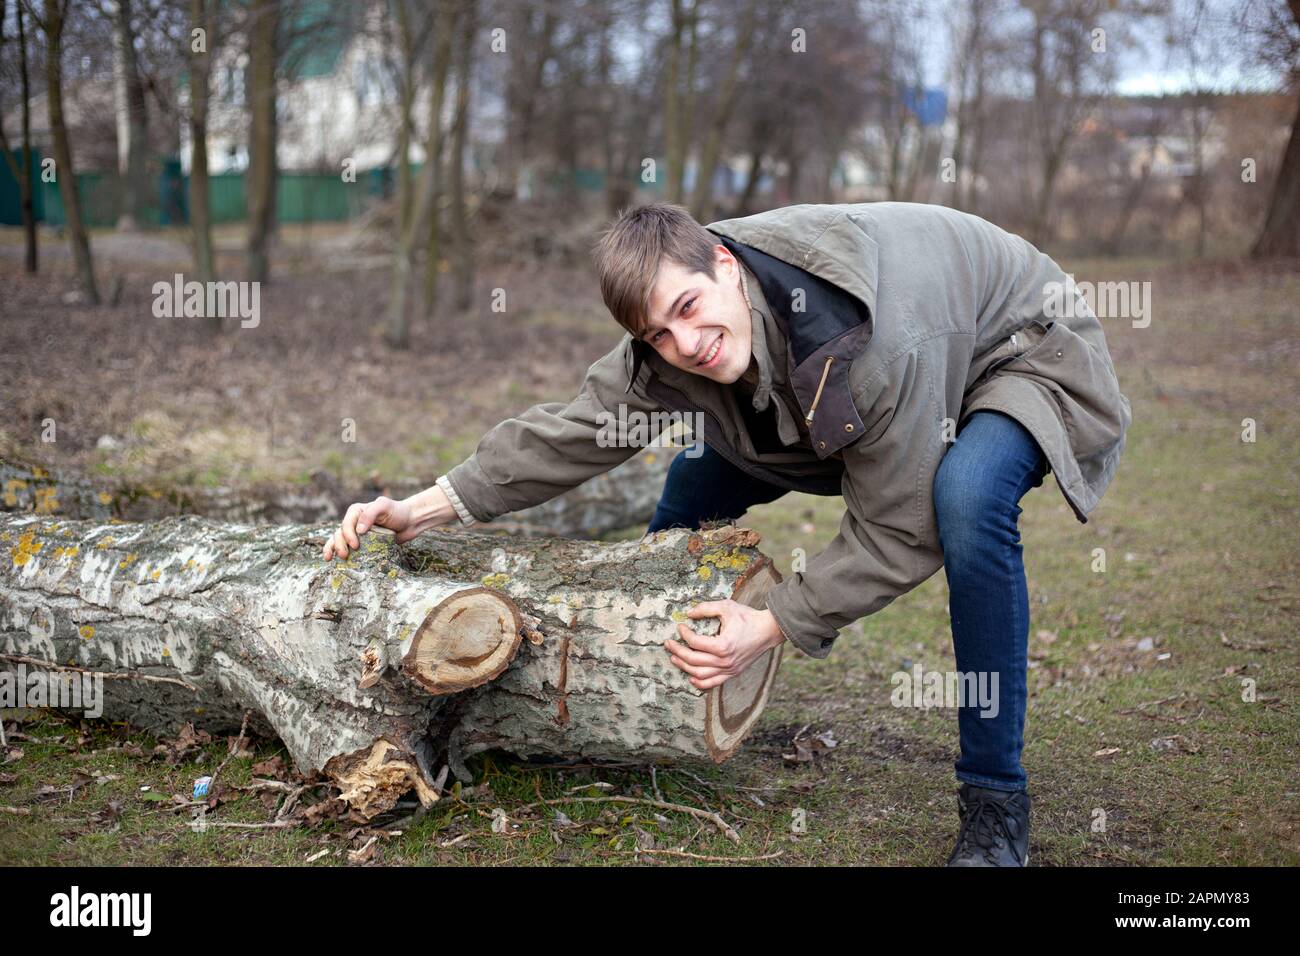 Waldreinigungshelfer, die sich um die Natur kümmern. Ein Kerl versucht zu ziehen, um einen umgestürzten Baum zu verschieben. Stockfoto